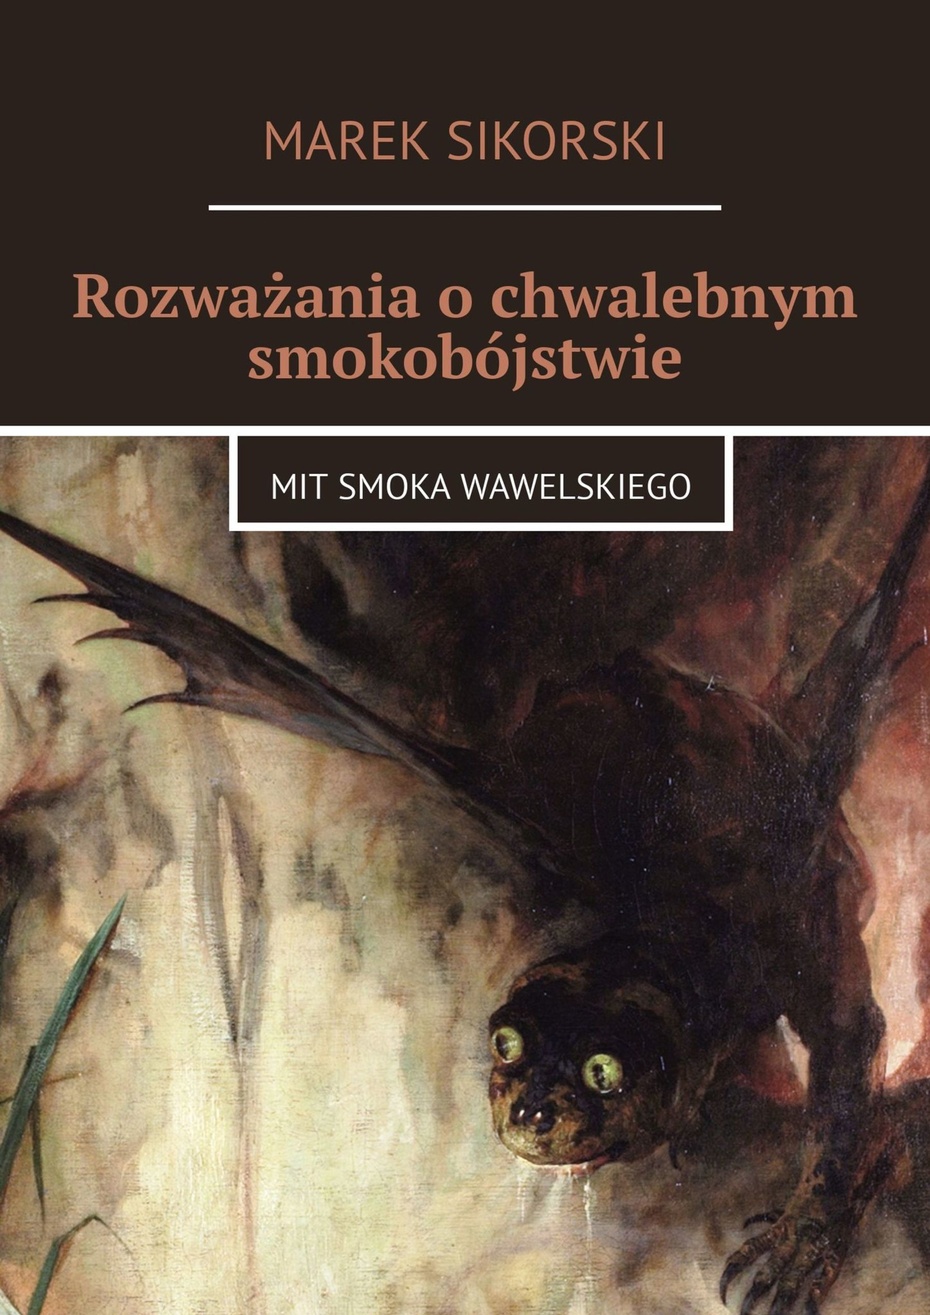 Marek Sikorski,  "Rozważania o chwalebnym smokobójstwie. Mit smoka wawelskiego"